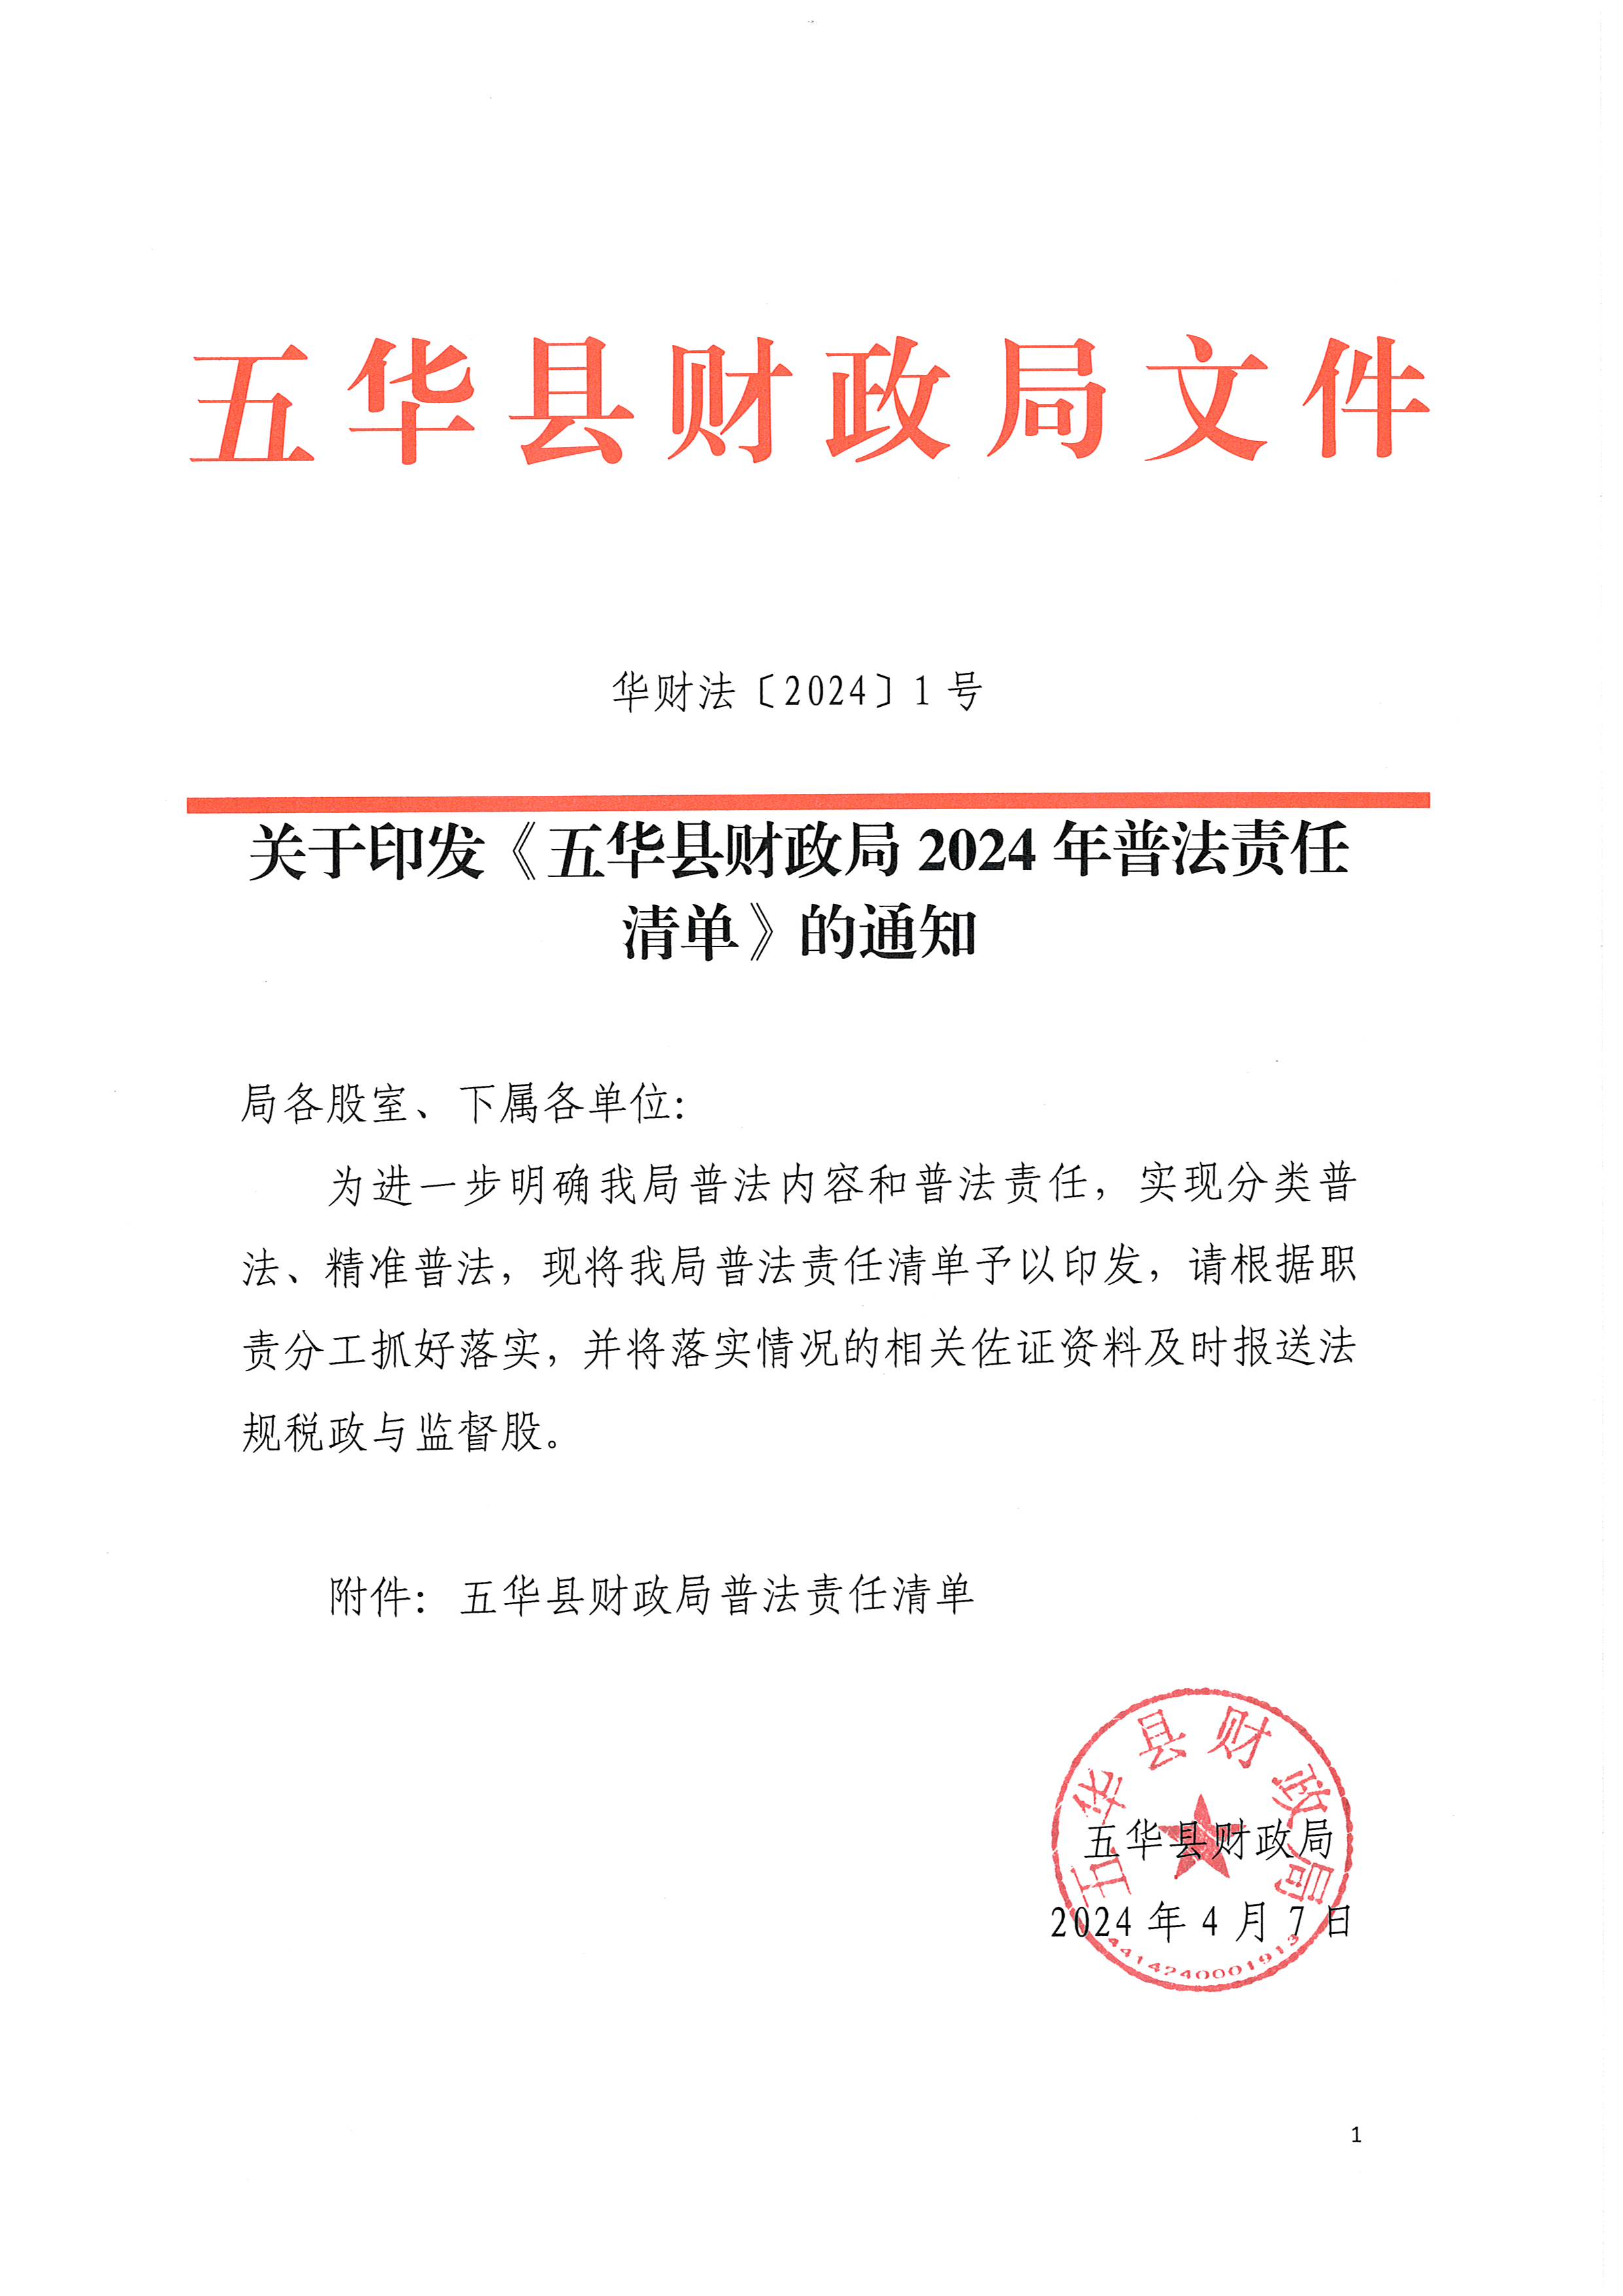 关于印发《五华县财政局2024年普法责任清单》的通知_页面_1.jpg